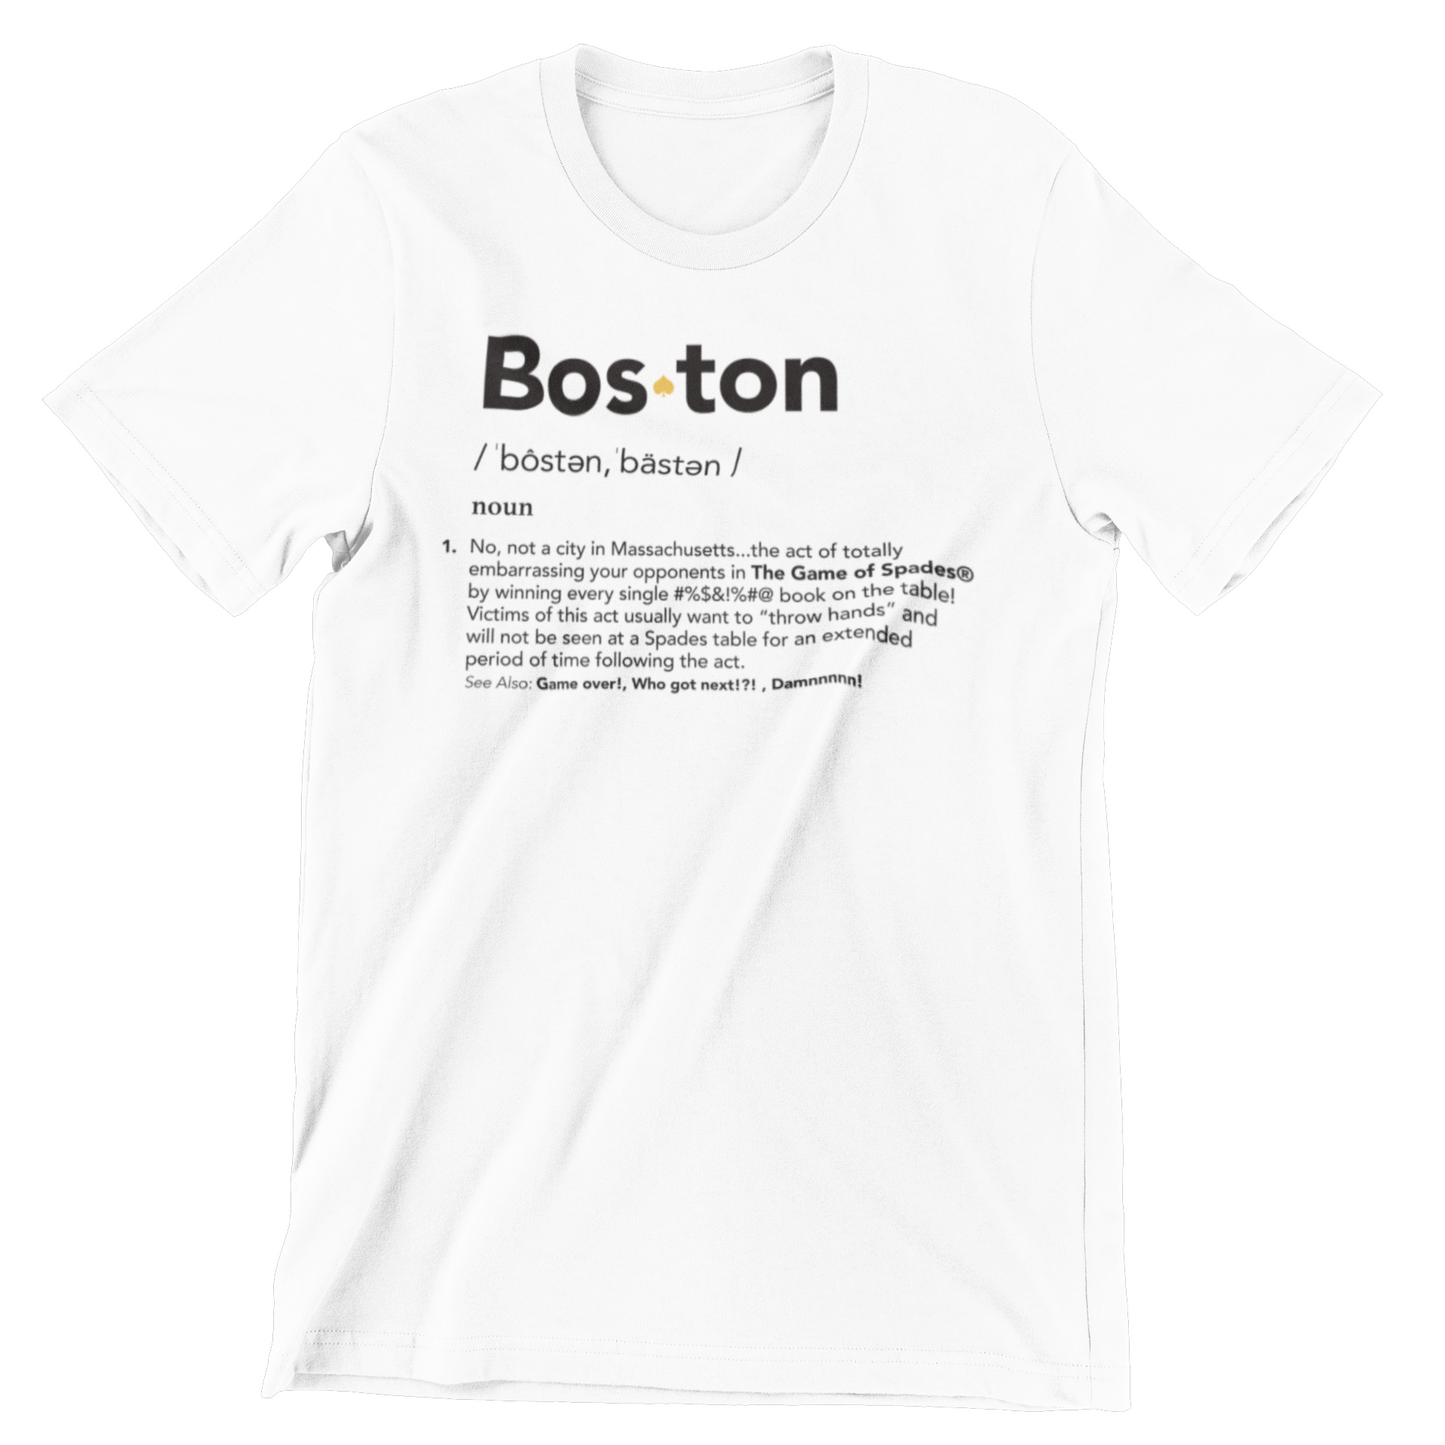 "bosten" t-shirt